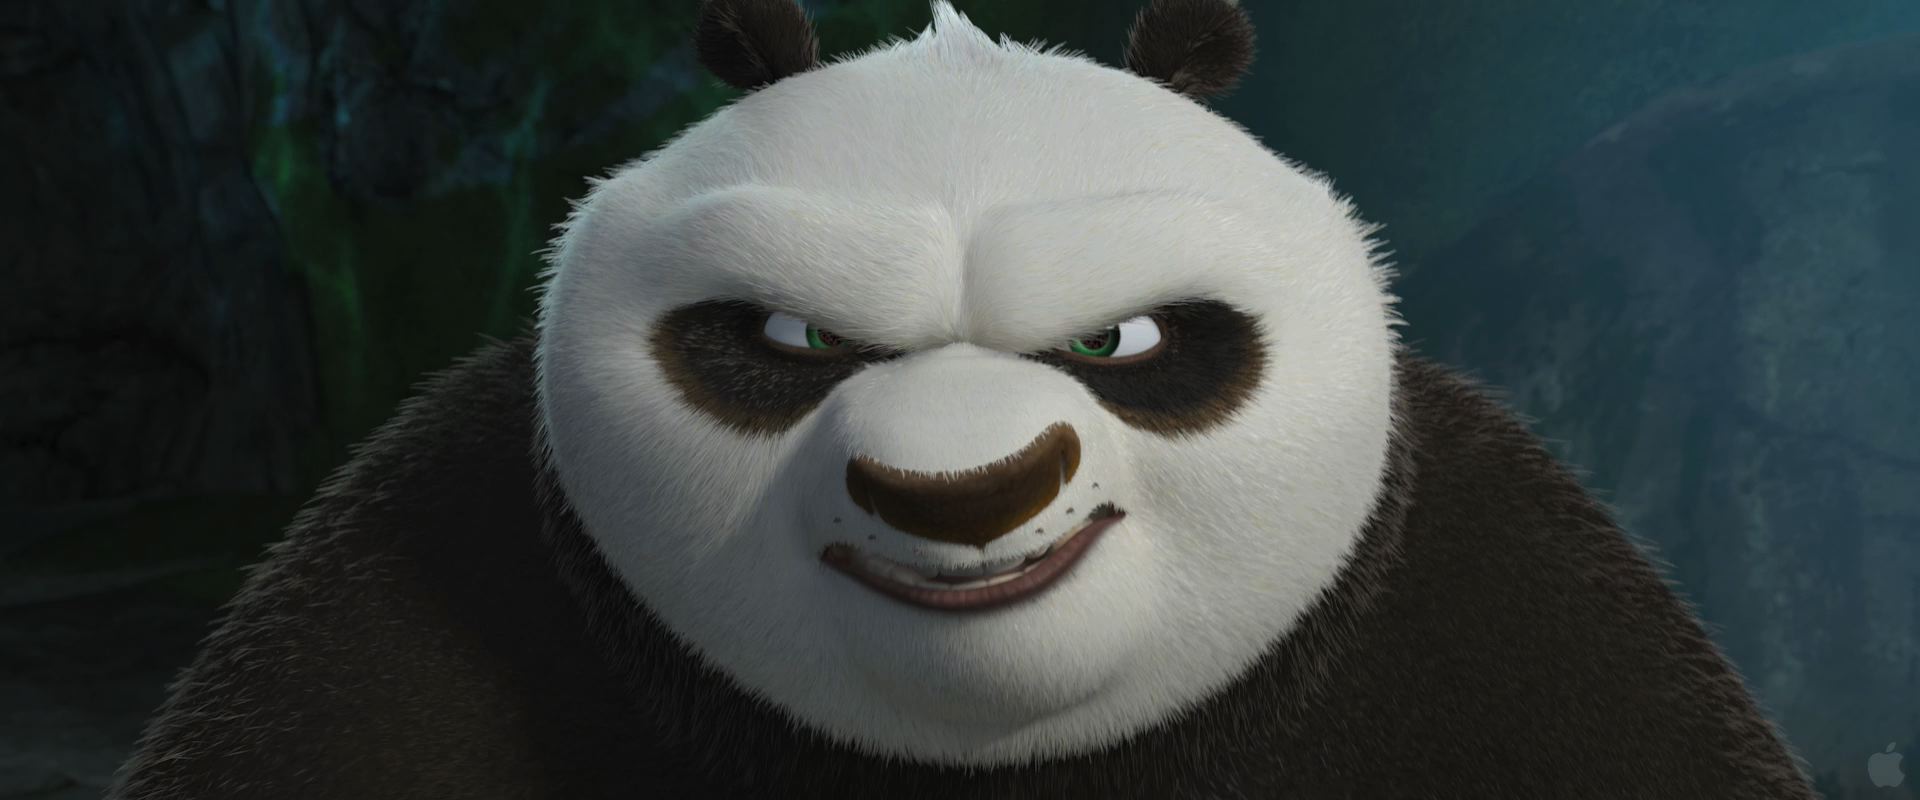 Kung Fu Panda Wallpaper Desktop In HD